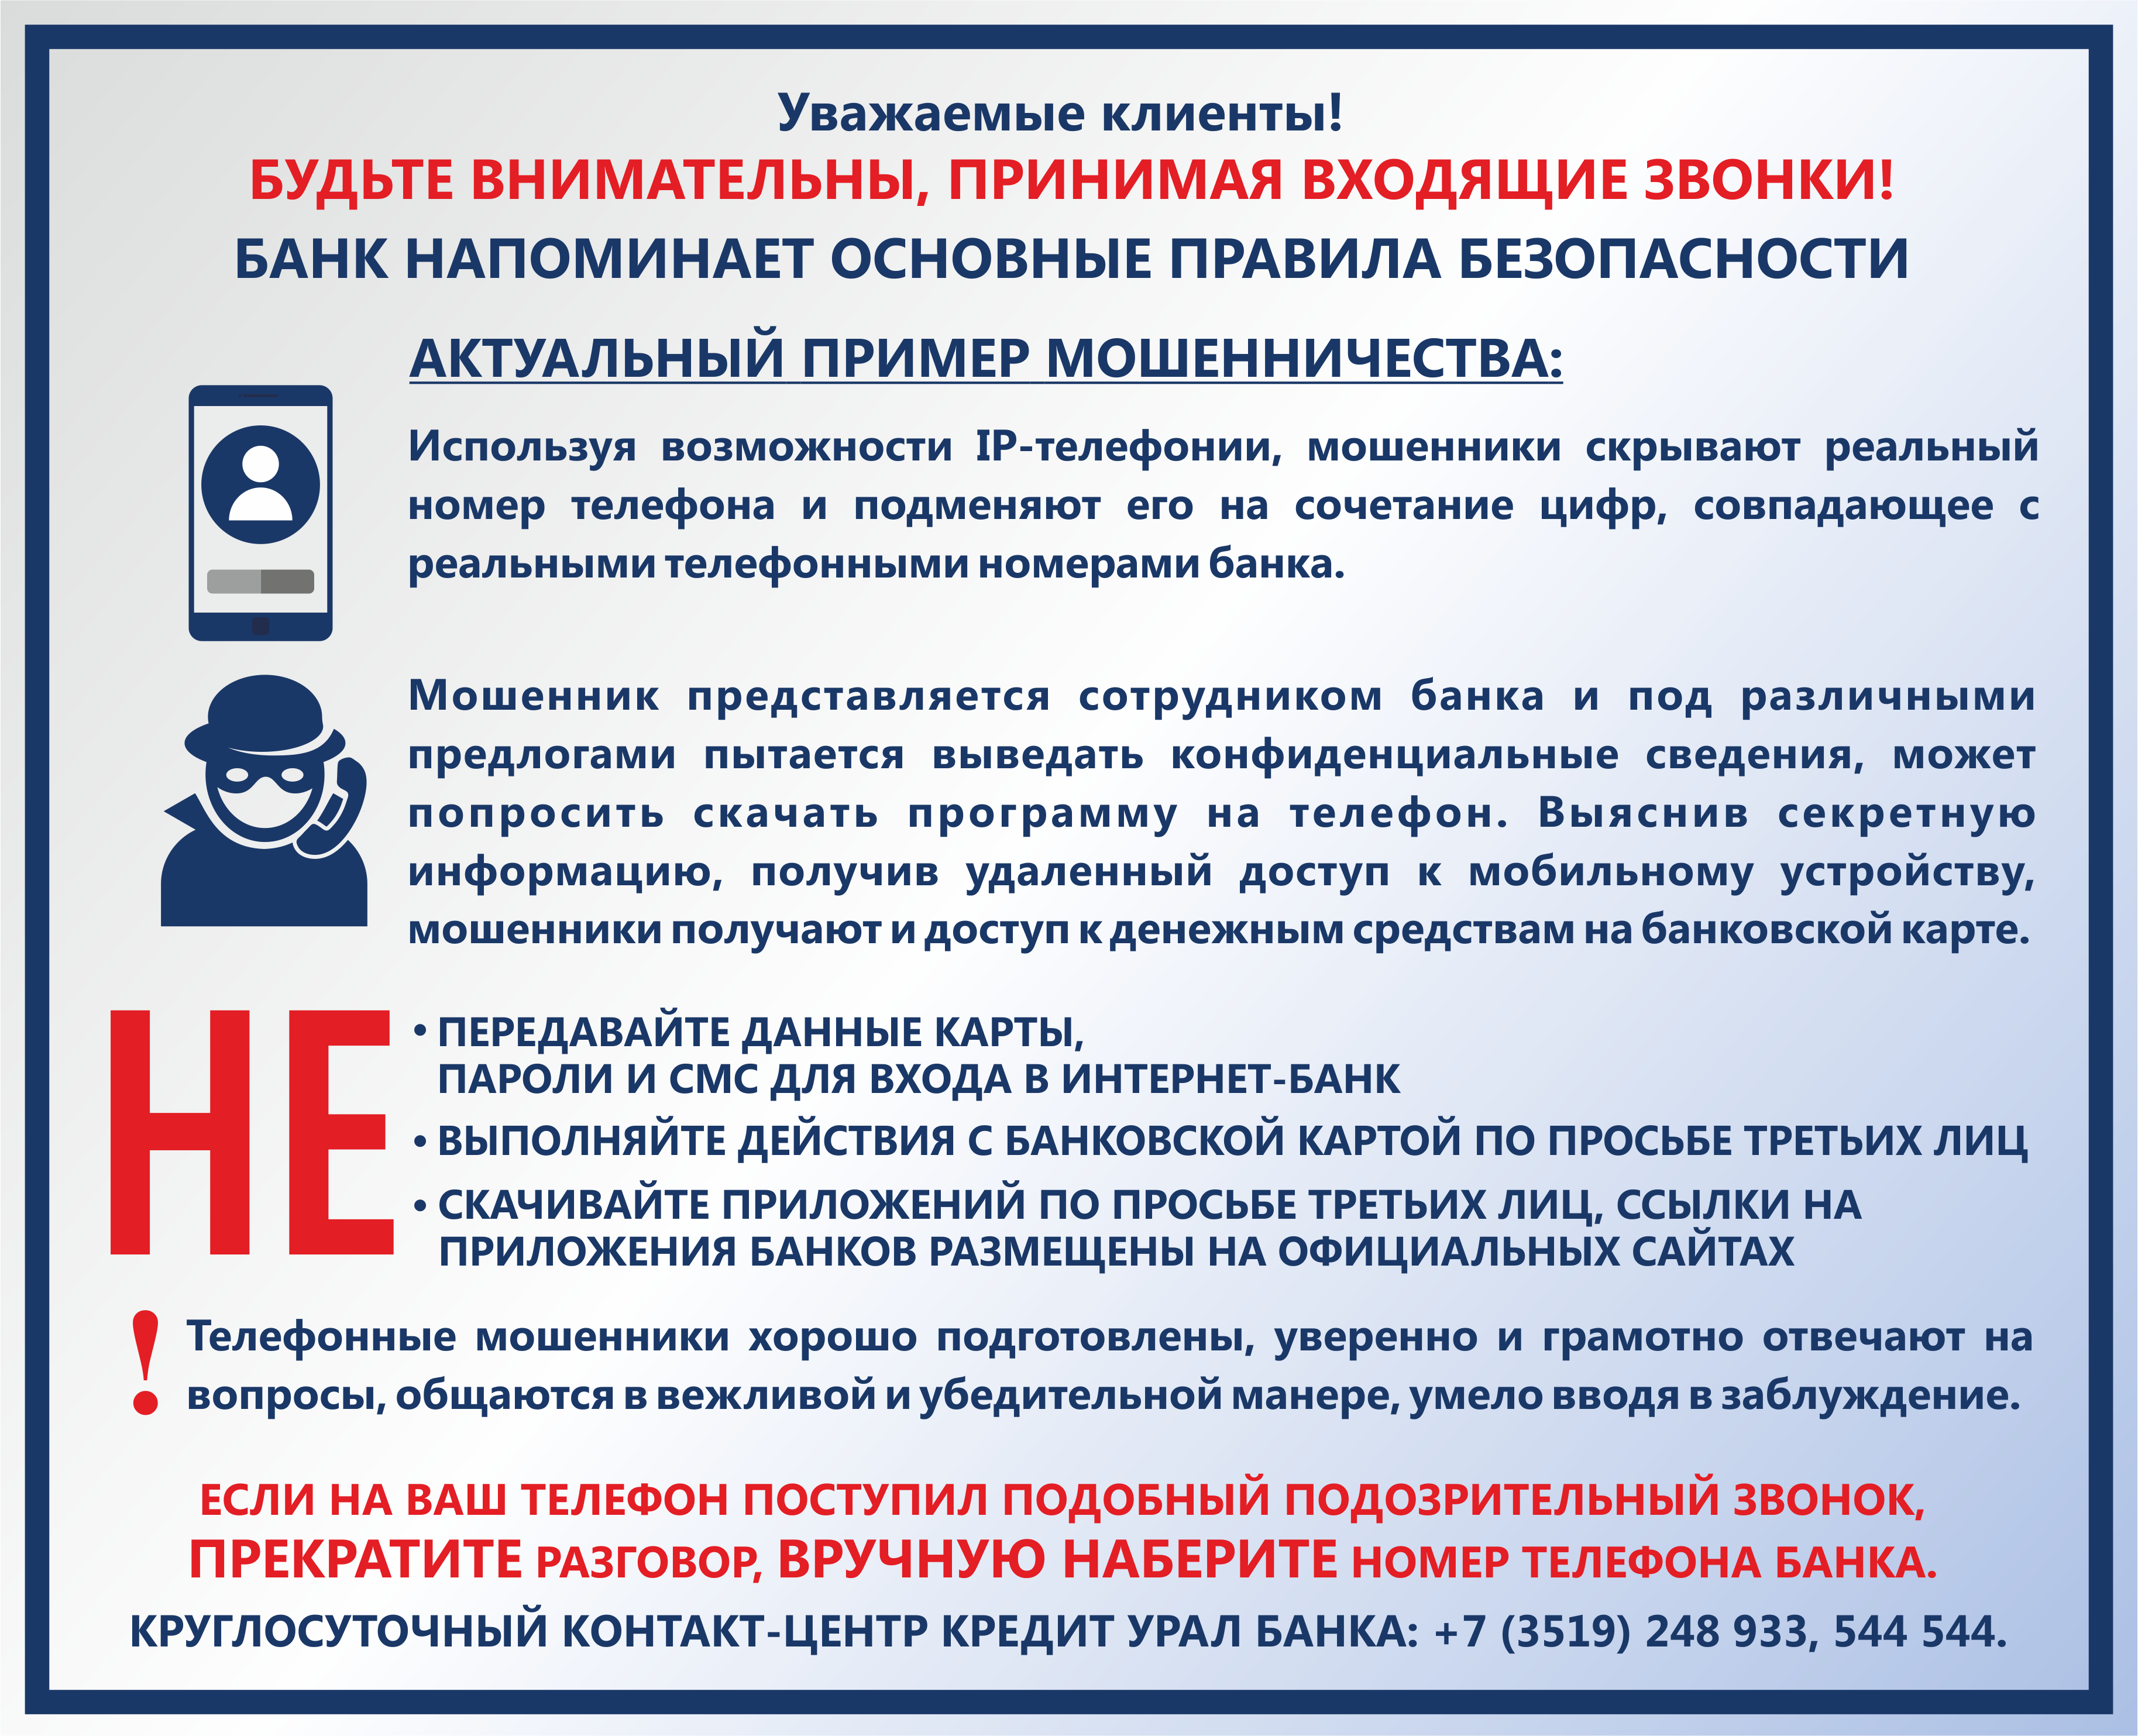 Кредит Урал Банк напоминает о правилах финансовой безопасности